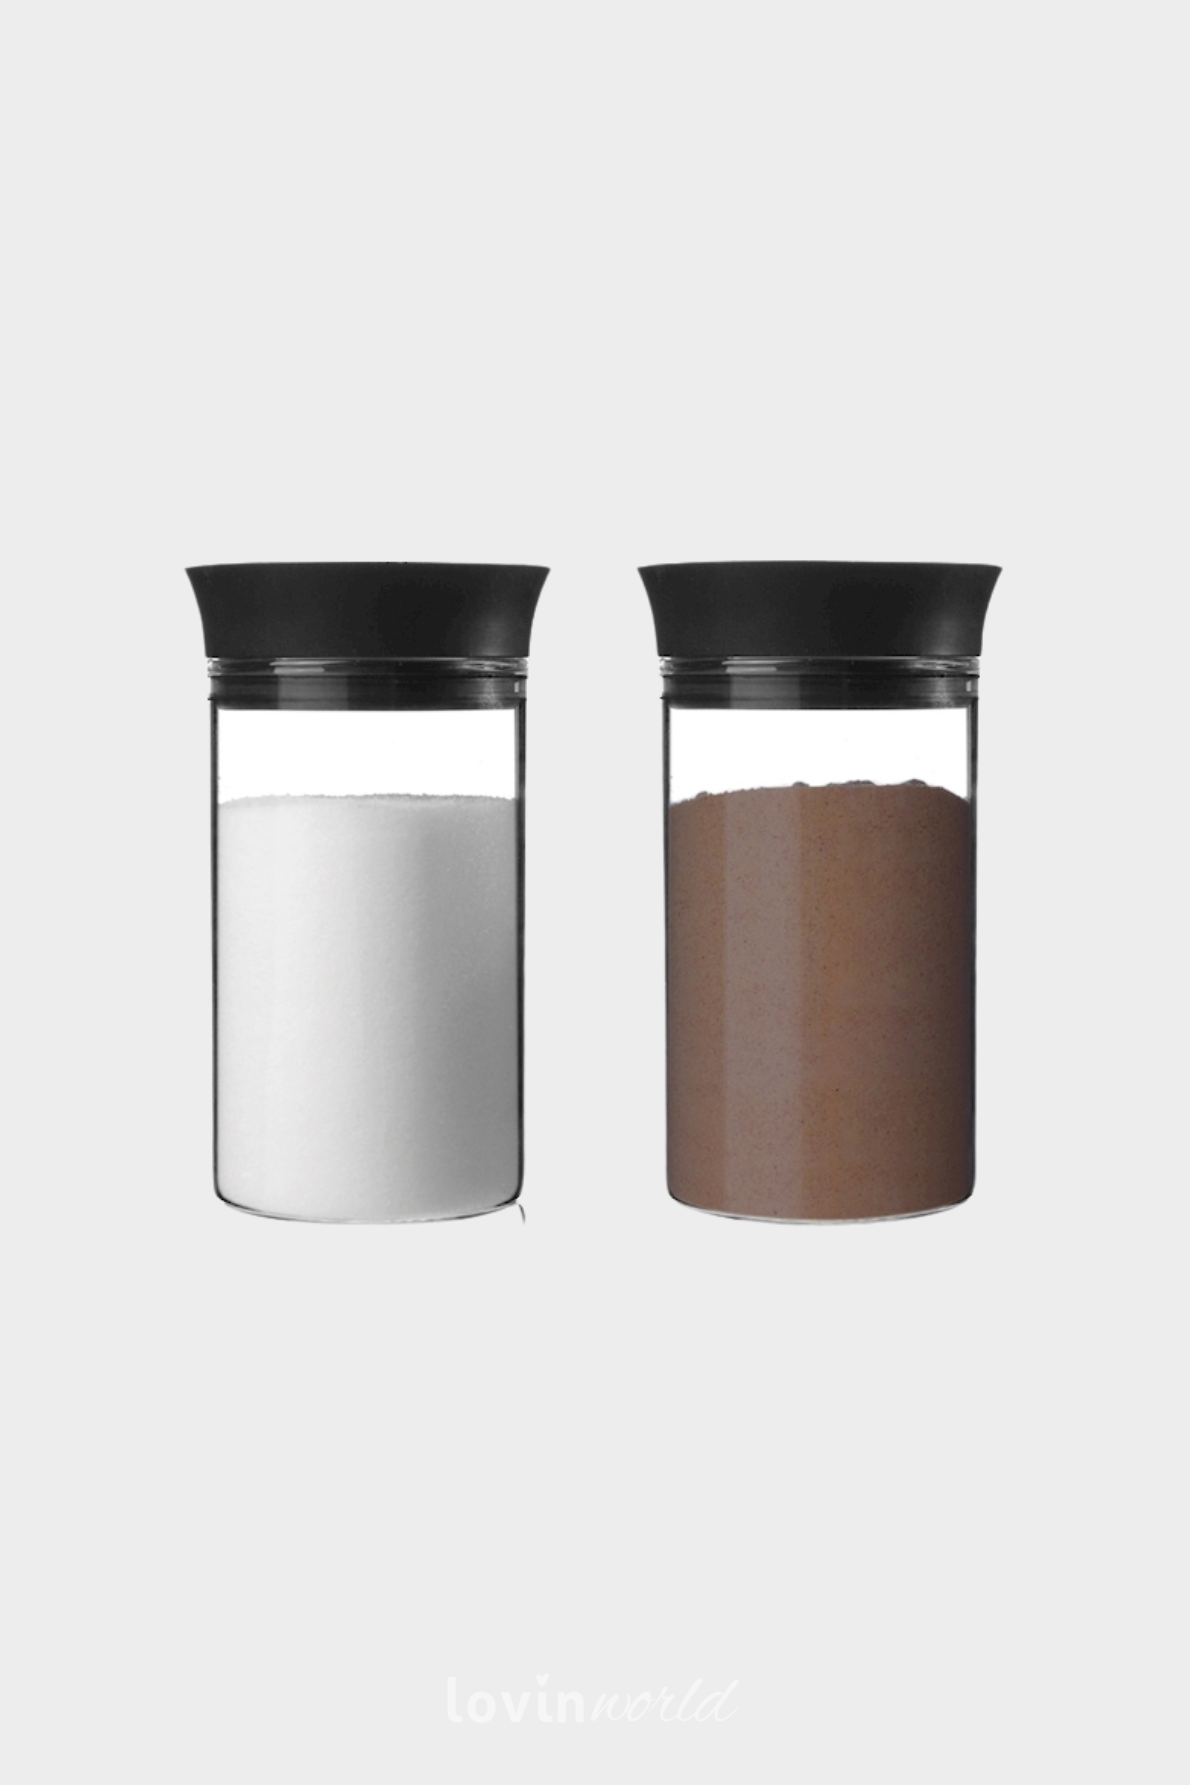 Spargi-zucchero/cacao, in borosilicato-2